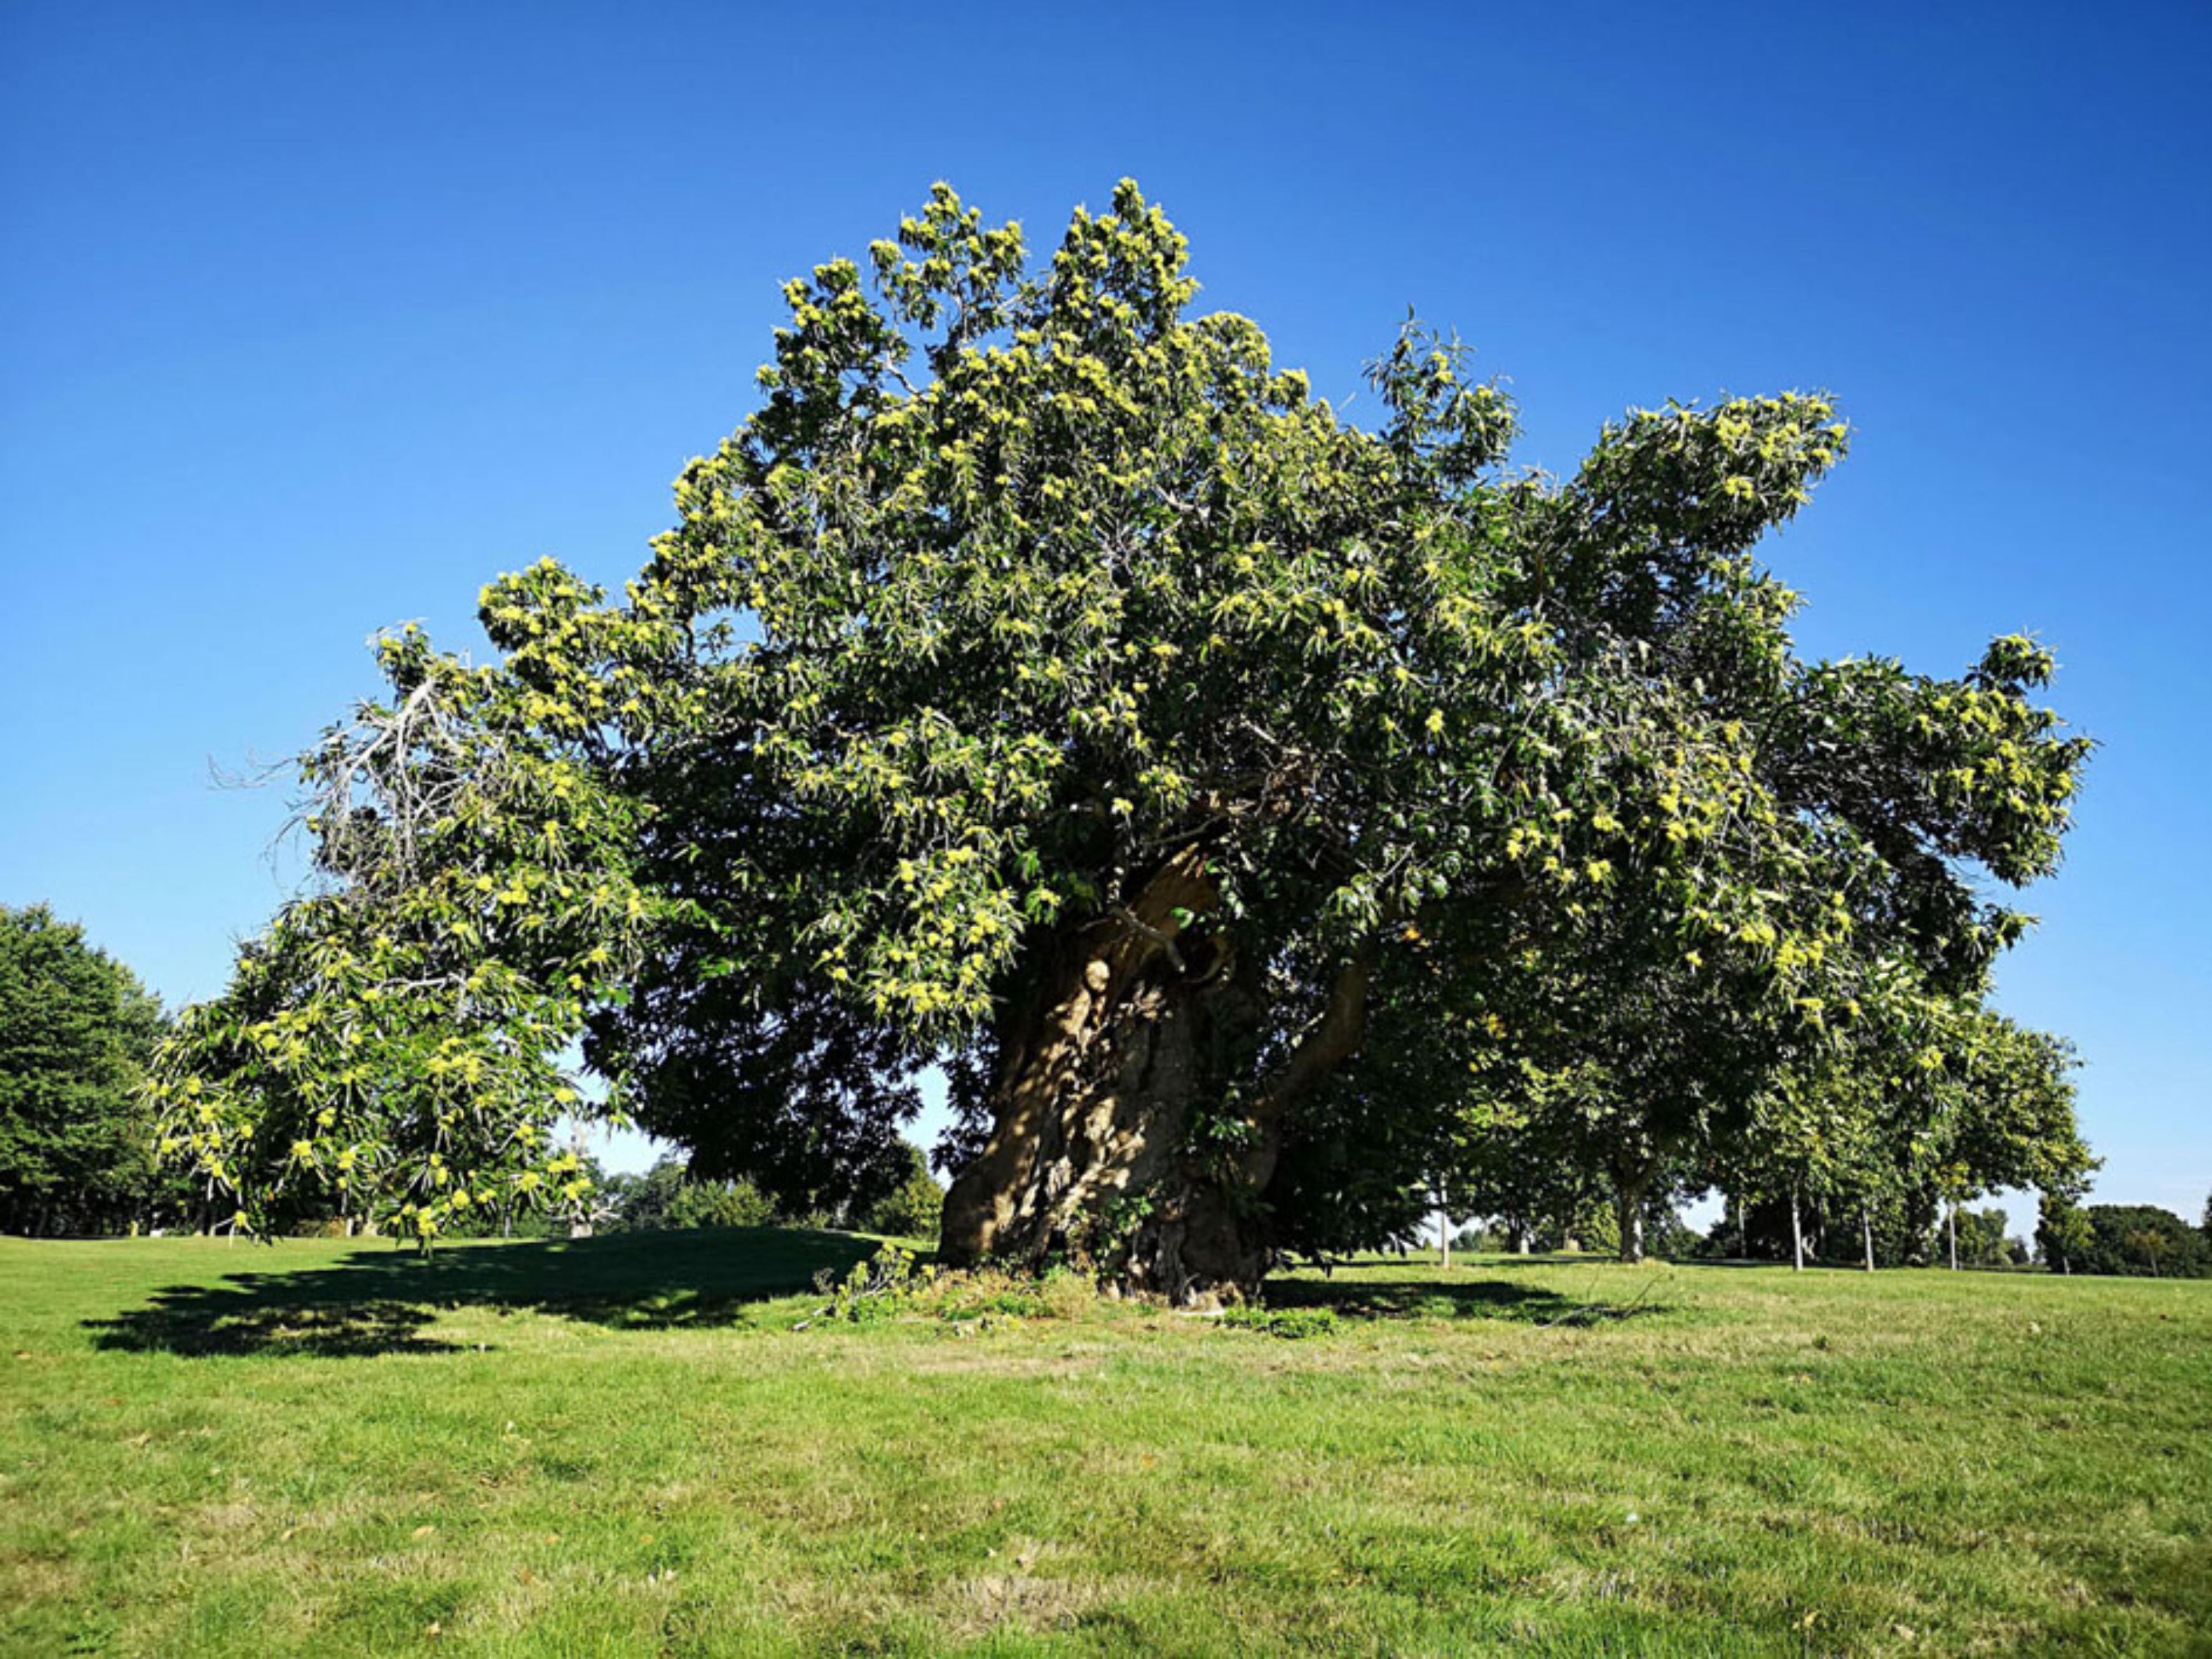 600 year old tree in Northampton